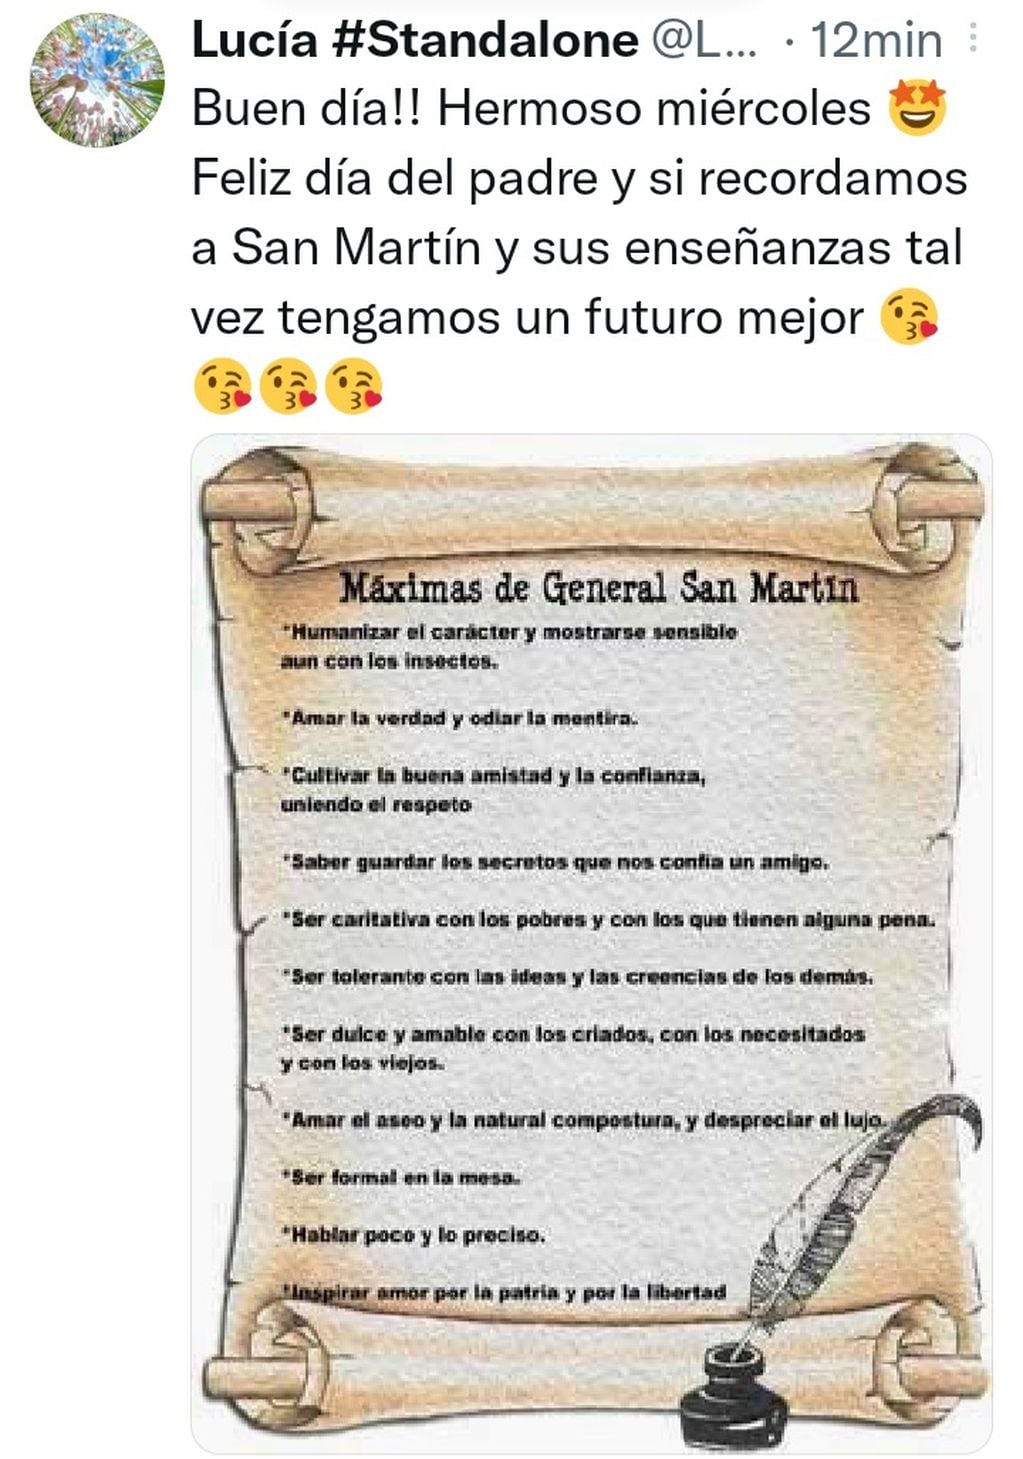 Tweets que conmemoran el día del padre en Mendoza.